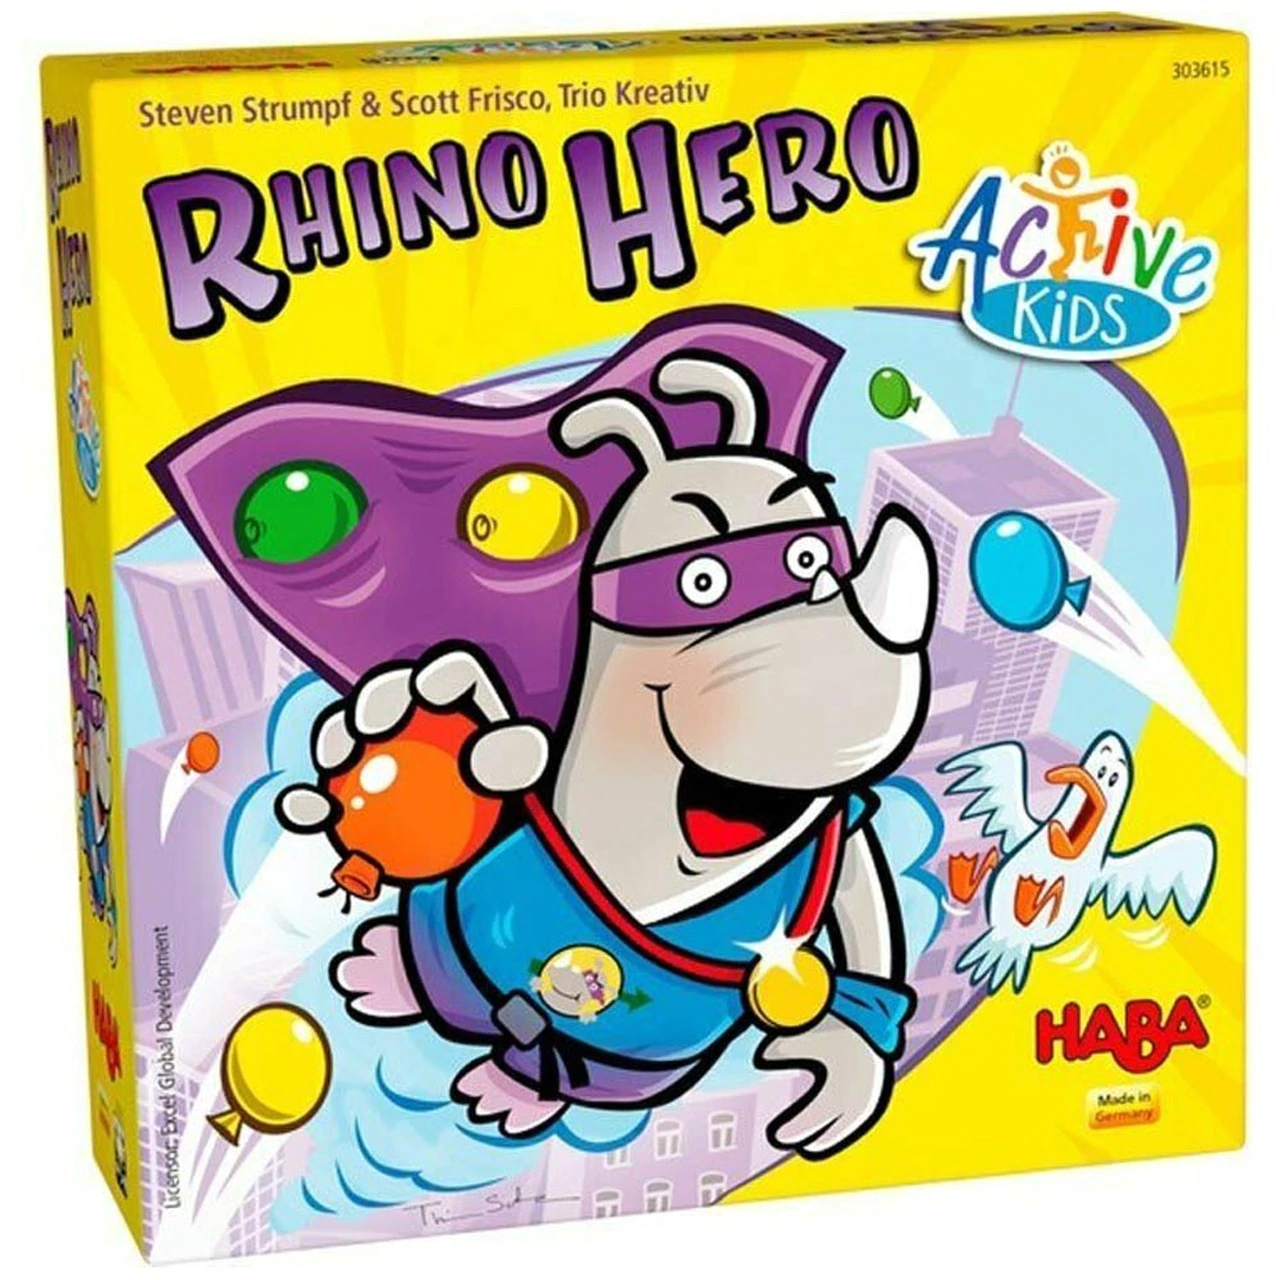 RHINO HERO ACTIVE KIDS